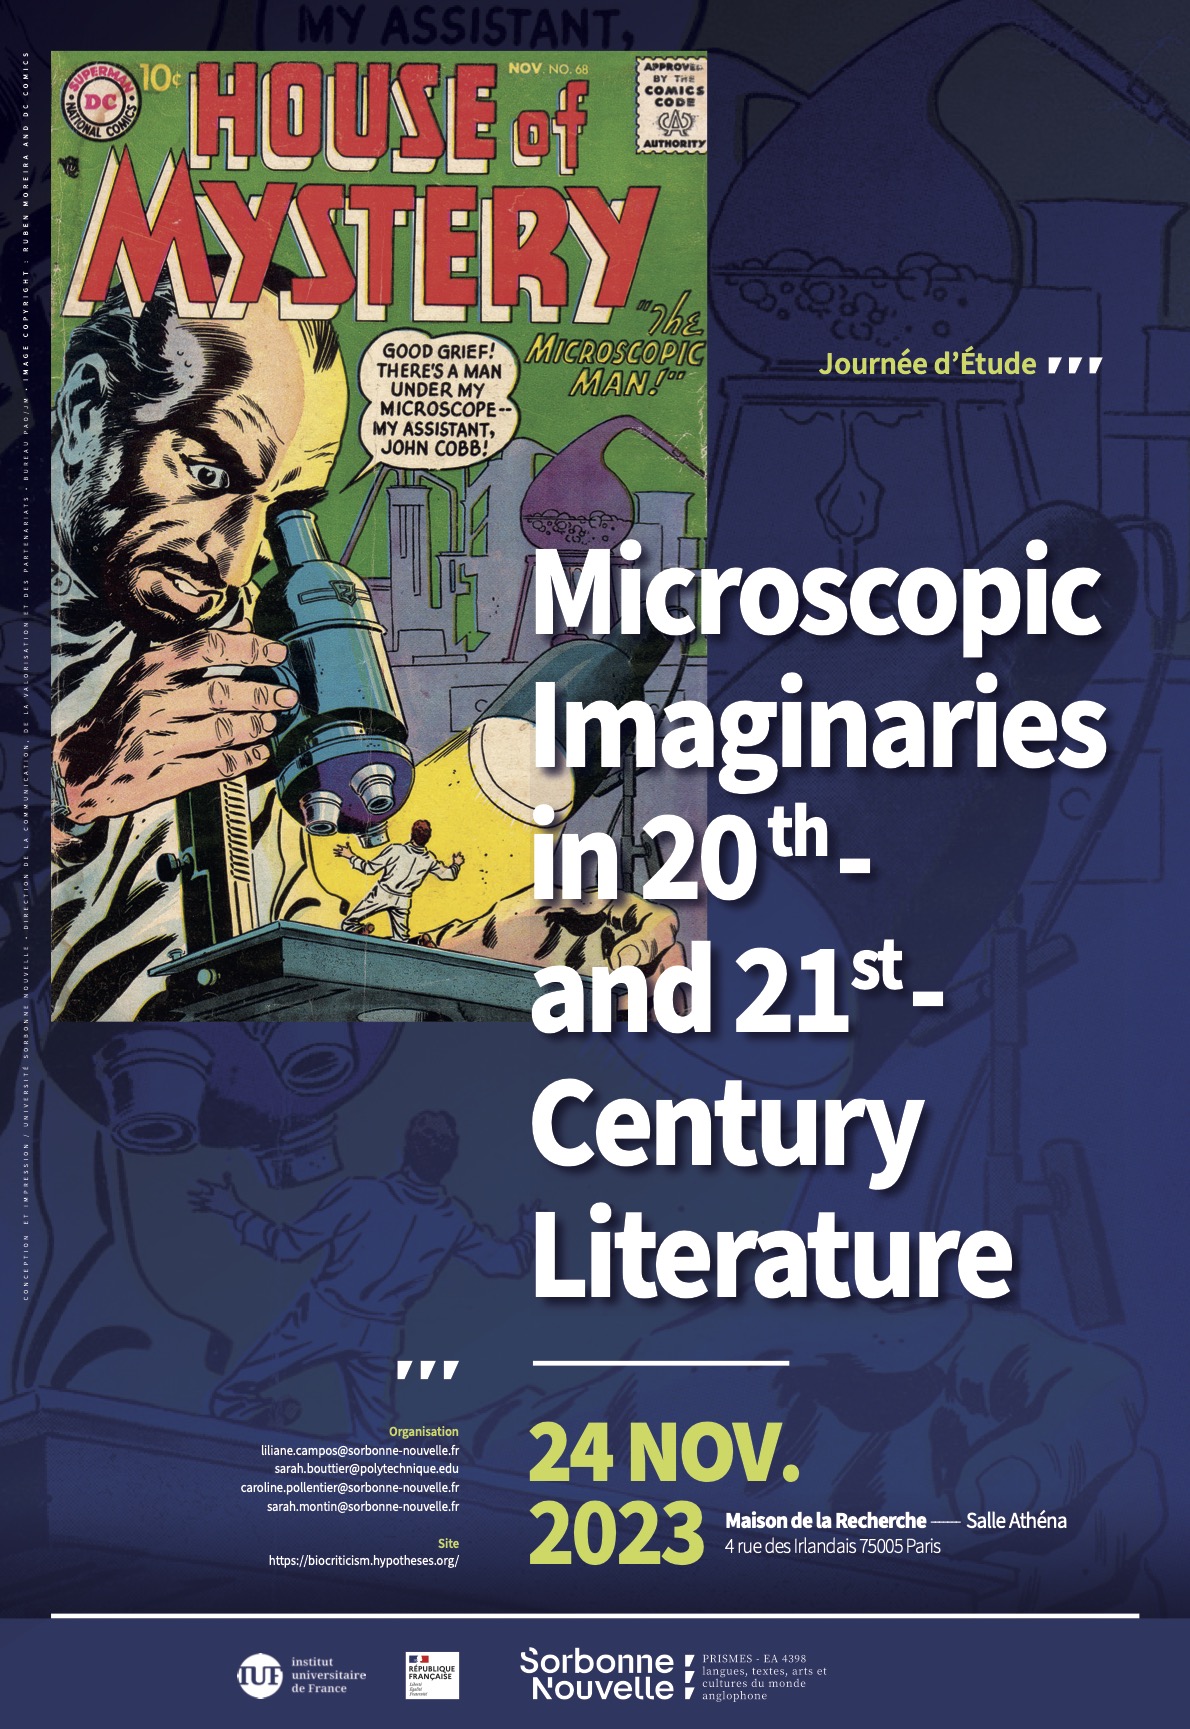 Affiche de la journée d'études Microscopic Imaginaries, 24 novembre 2023, Maison de la Recherche Sorbonne Nouvelle, Paris